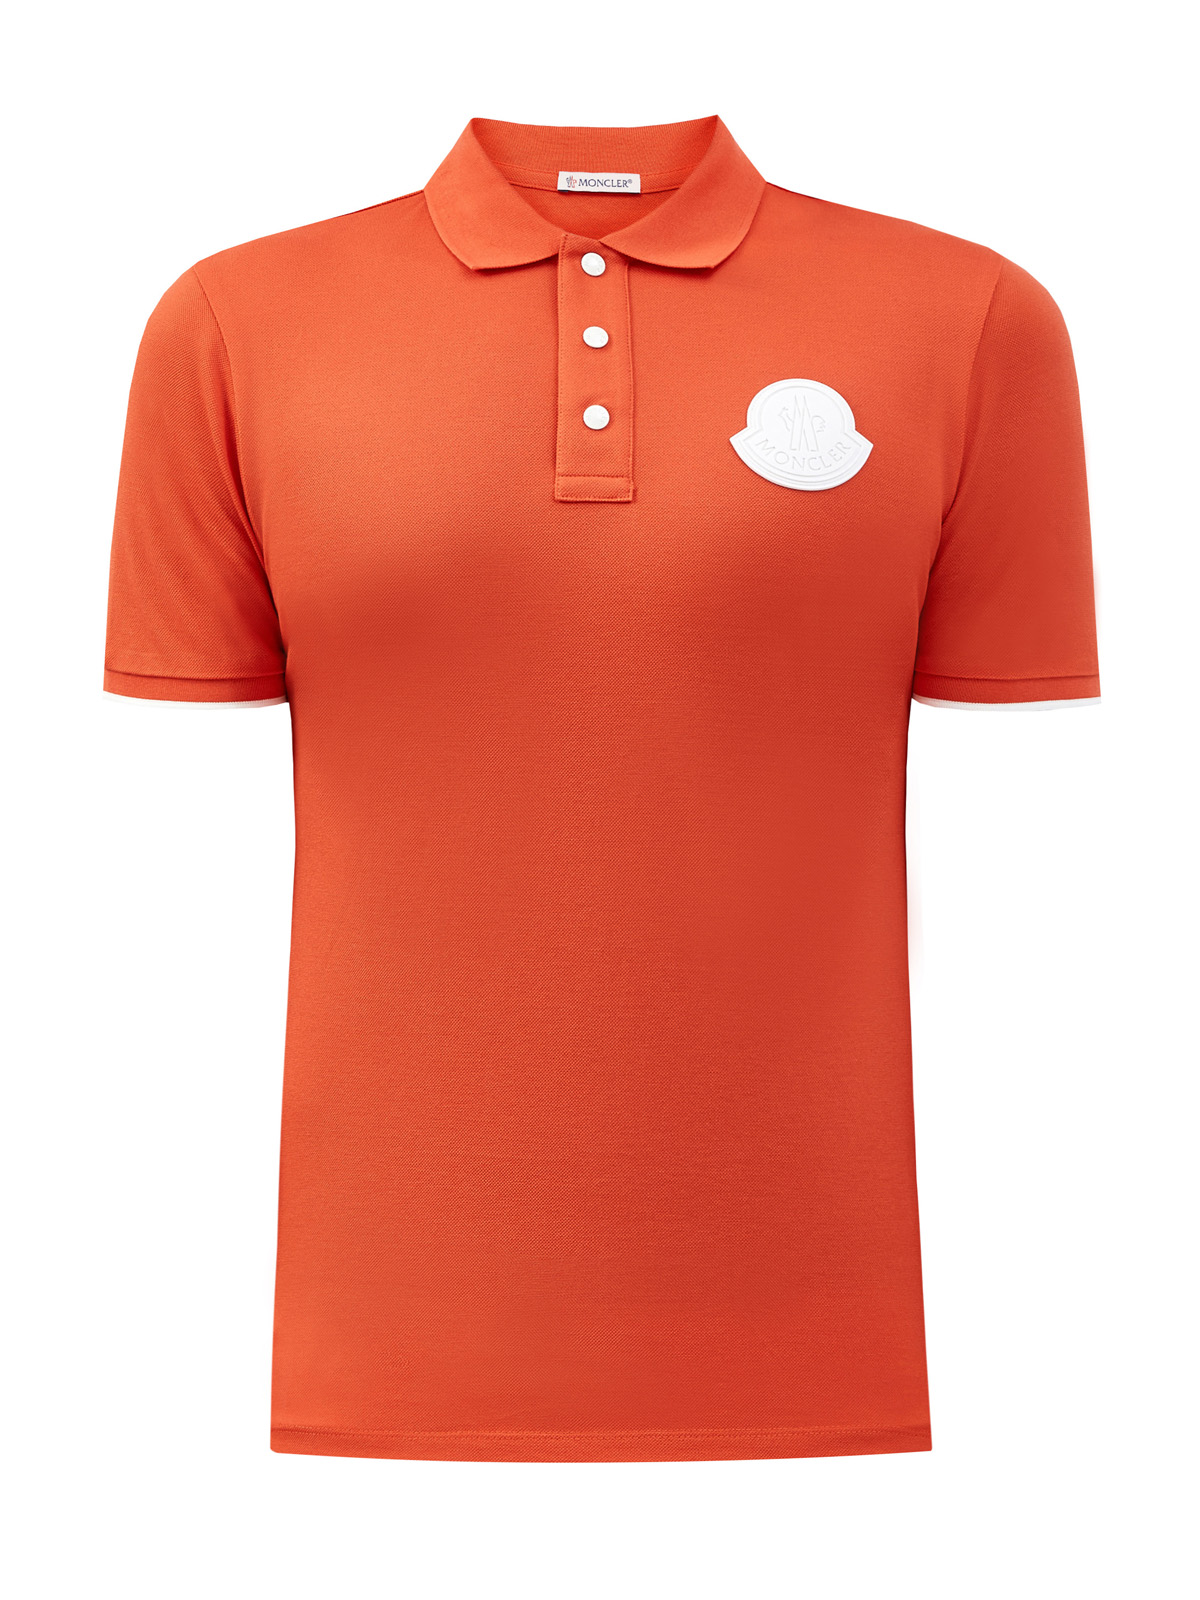 Поло из хлопкового пике с объемным логотипом бренда MONCLER, цвет оранжевый, размер M;L;2XL - фото 1